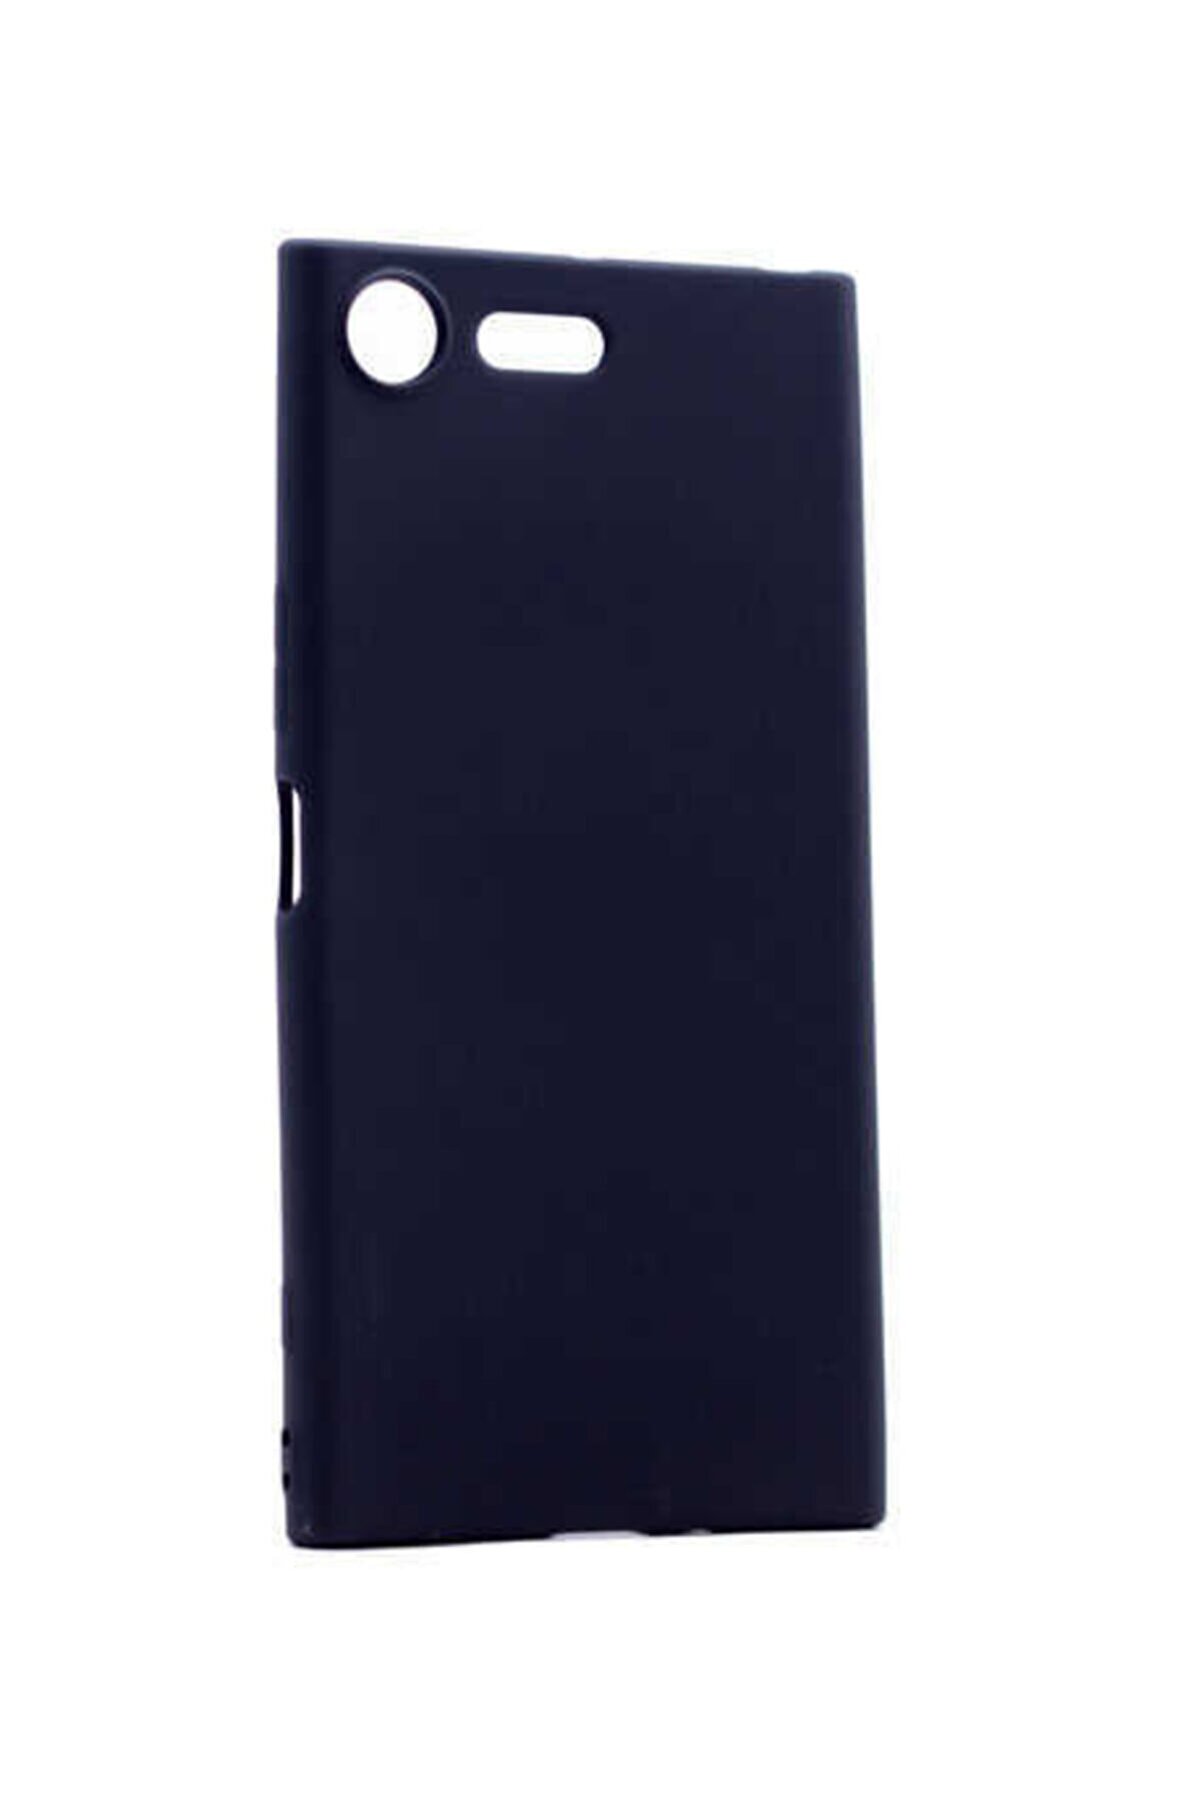 Dijimedia Sony Xperia Xz1 Premier Silikon Siyah Kılıf